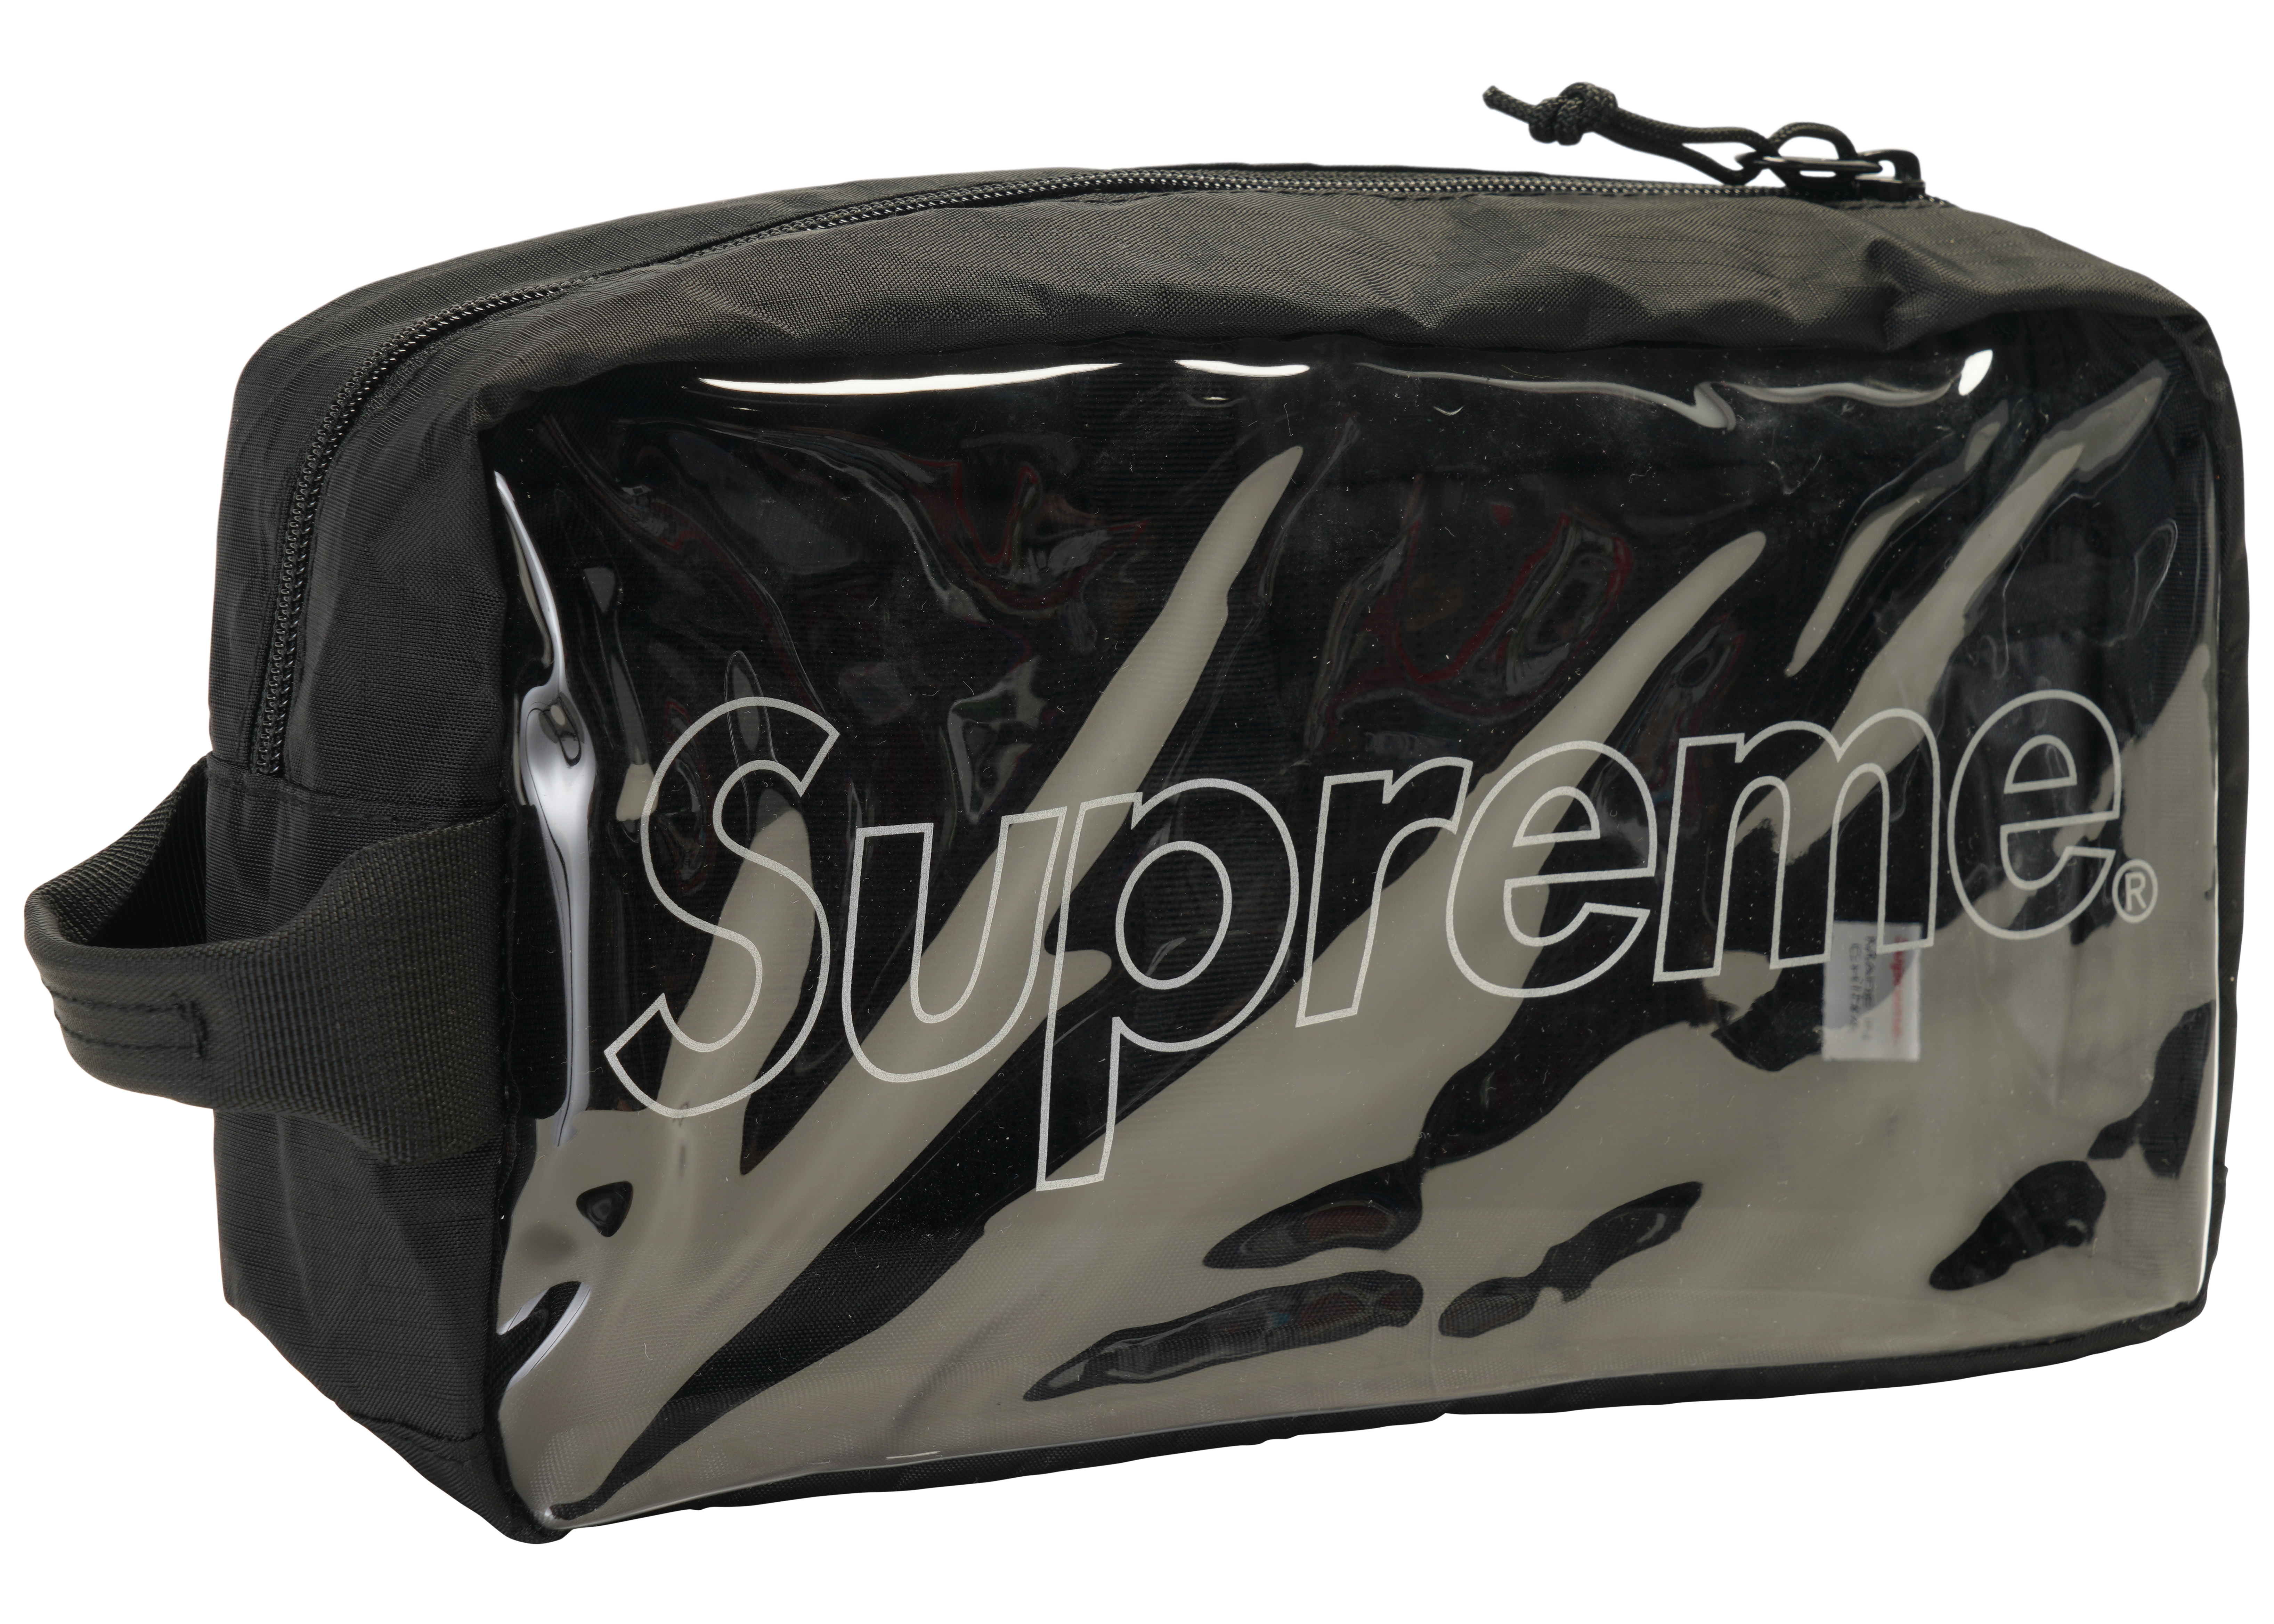 バッグsupreme 18aw 18fw utility bag BLACK 黒